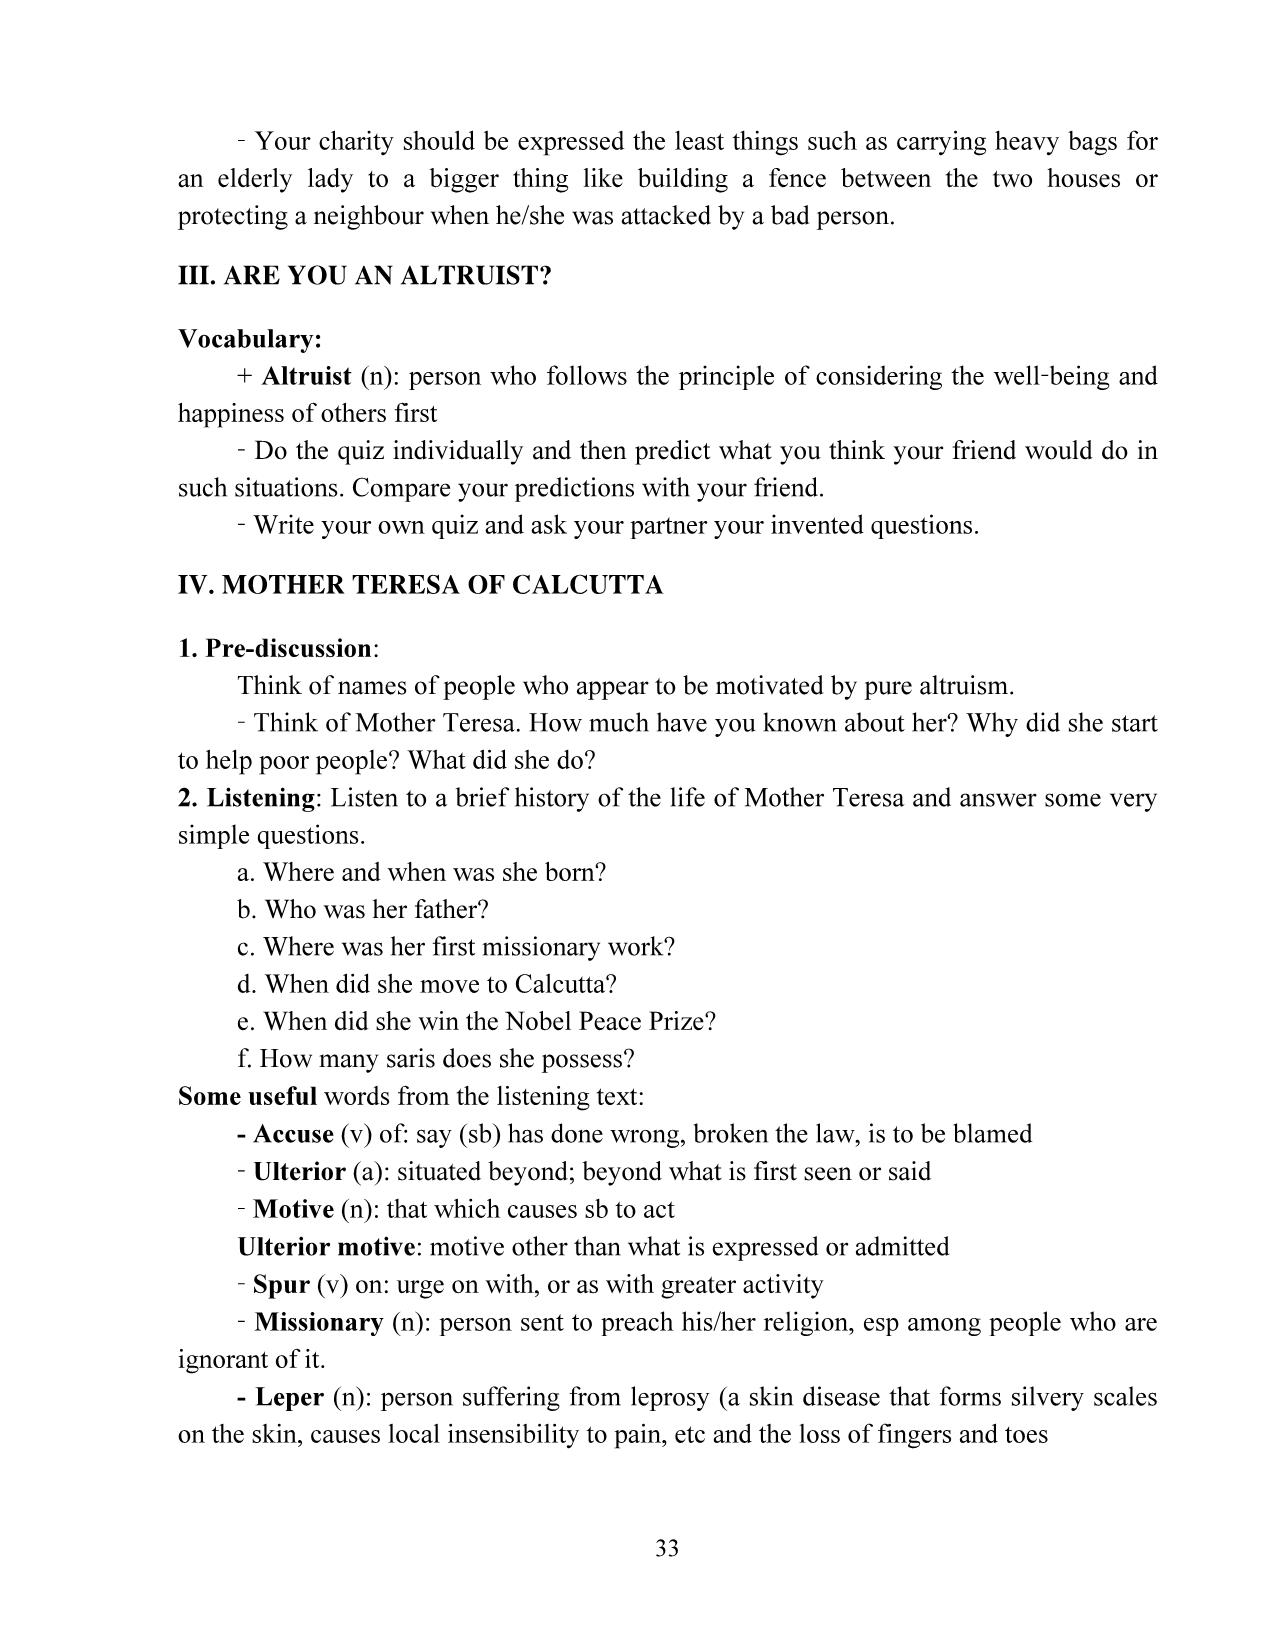 Giáo trình Speaking 3 (Phần 2) trang 6